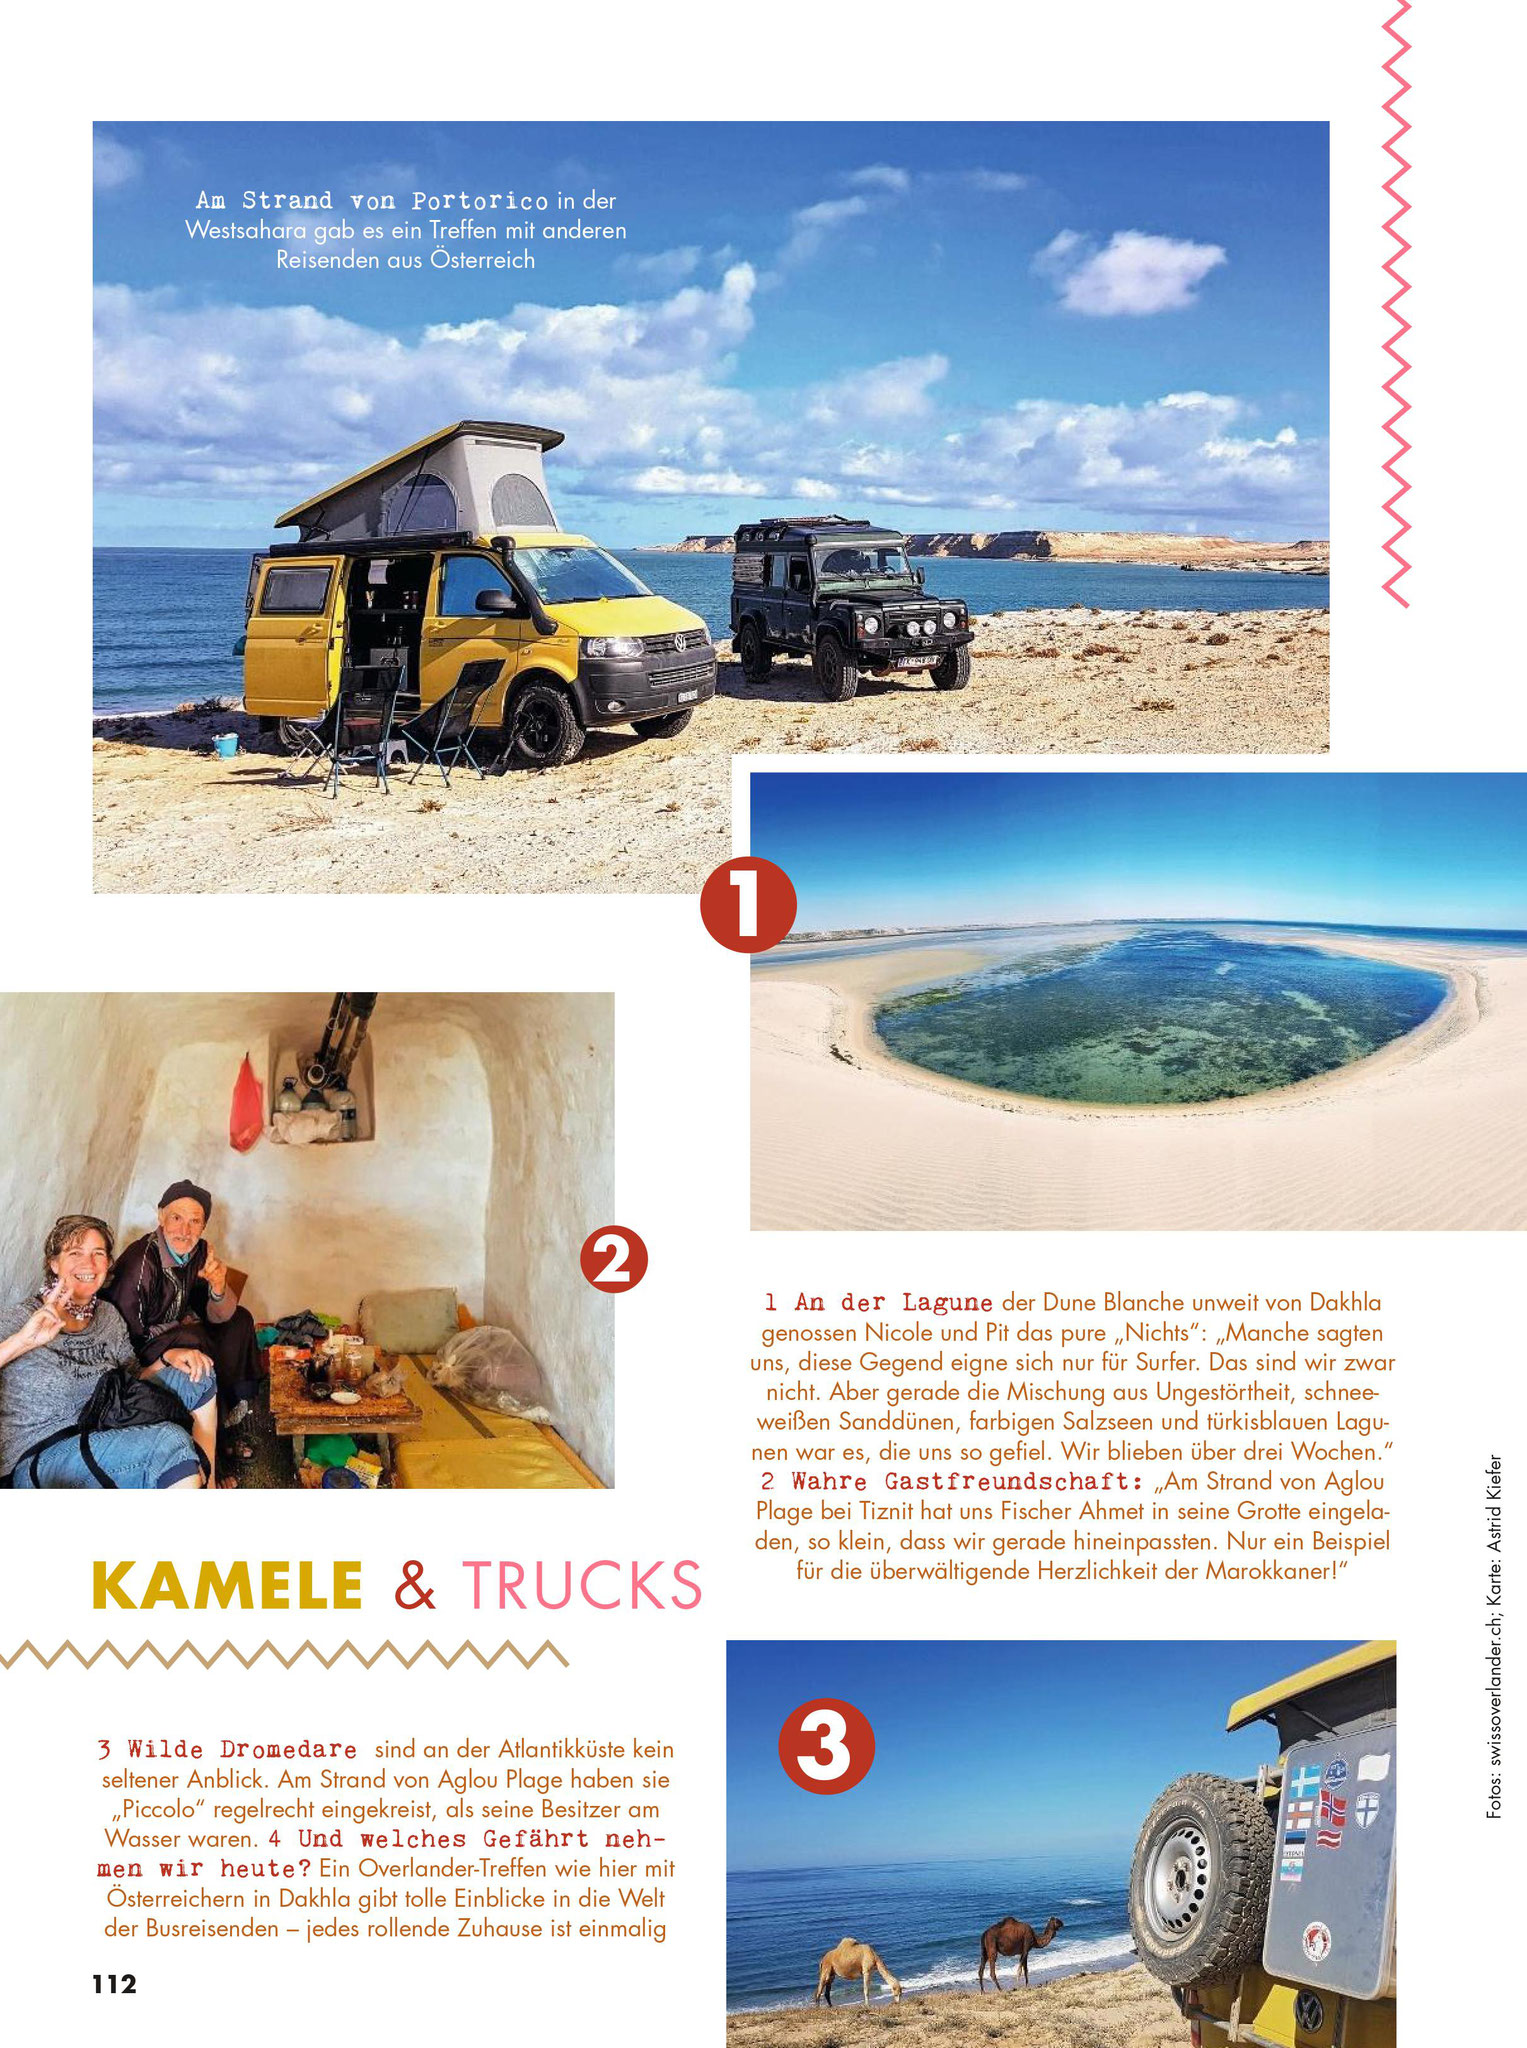 Interview zu unserer Marokkoreise im Reisemagazin 'Einfach los' - 07